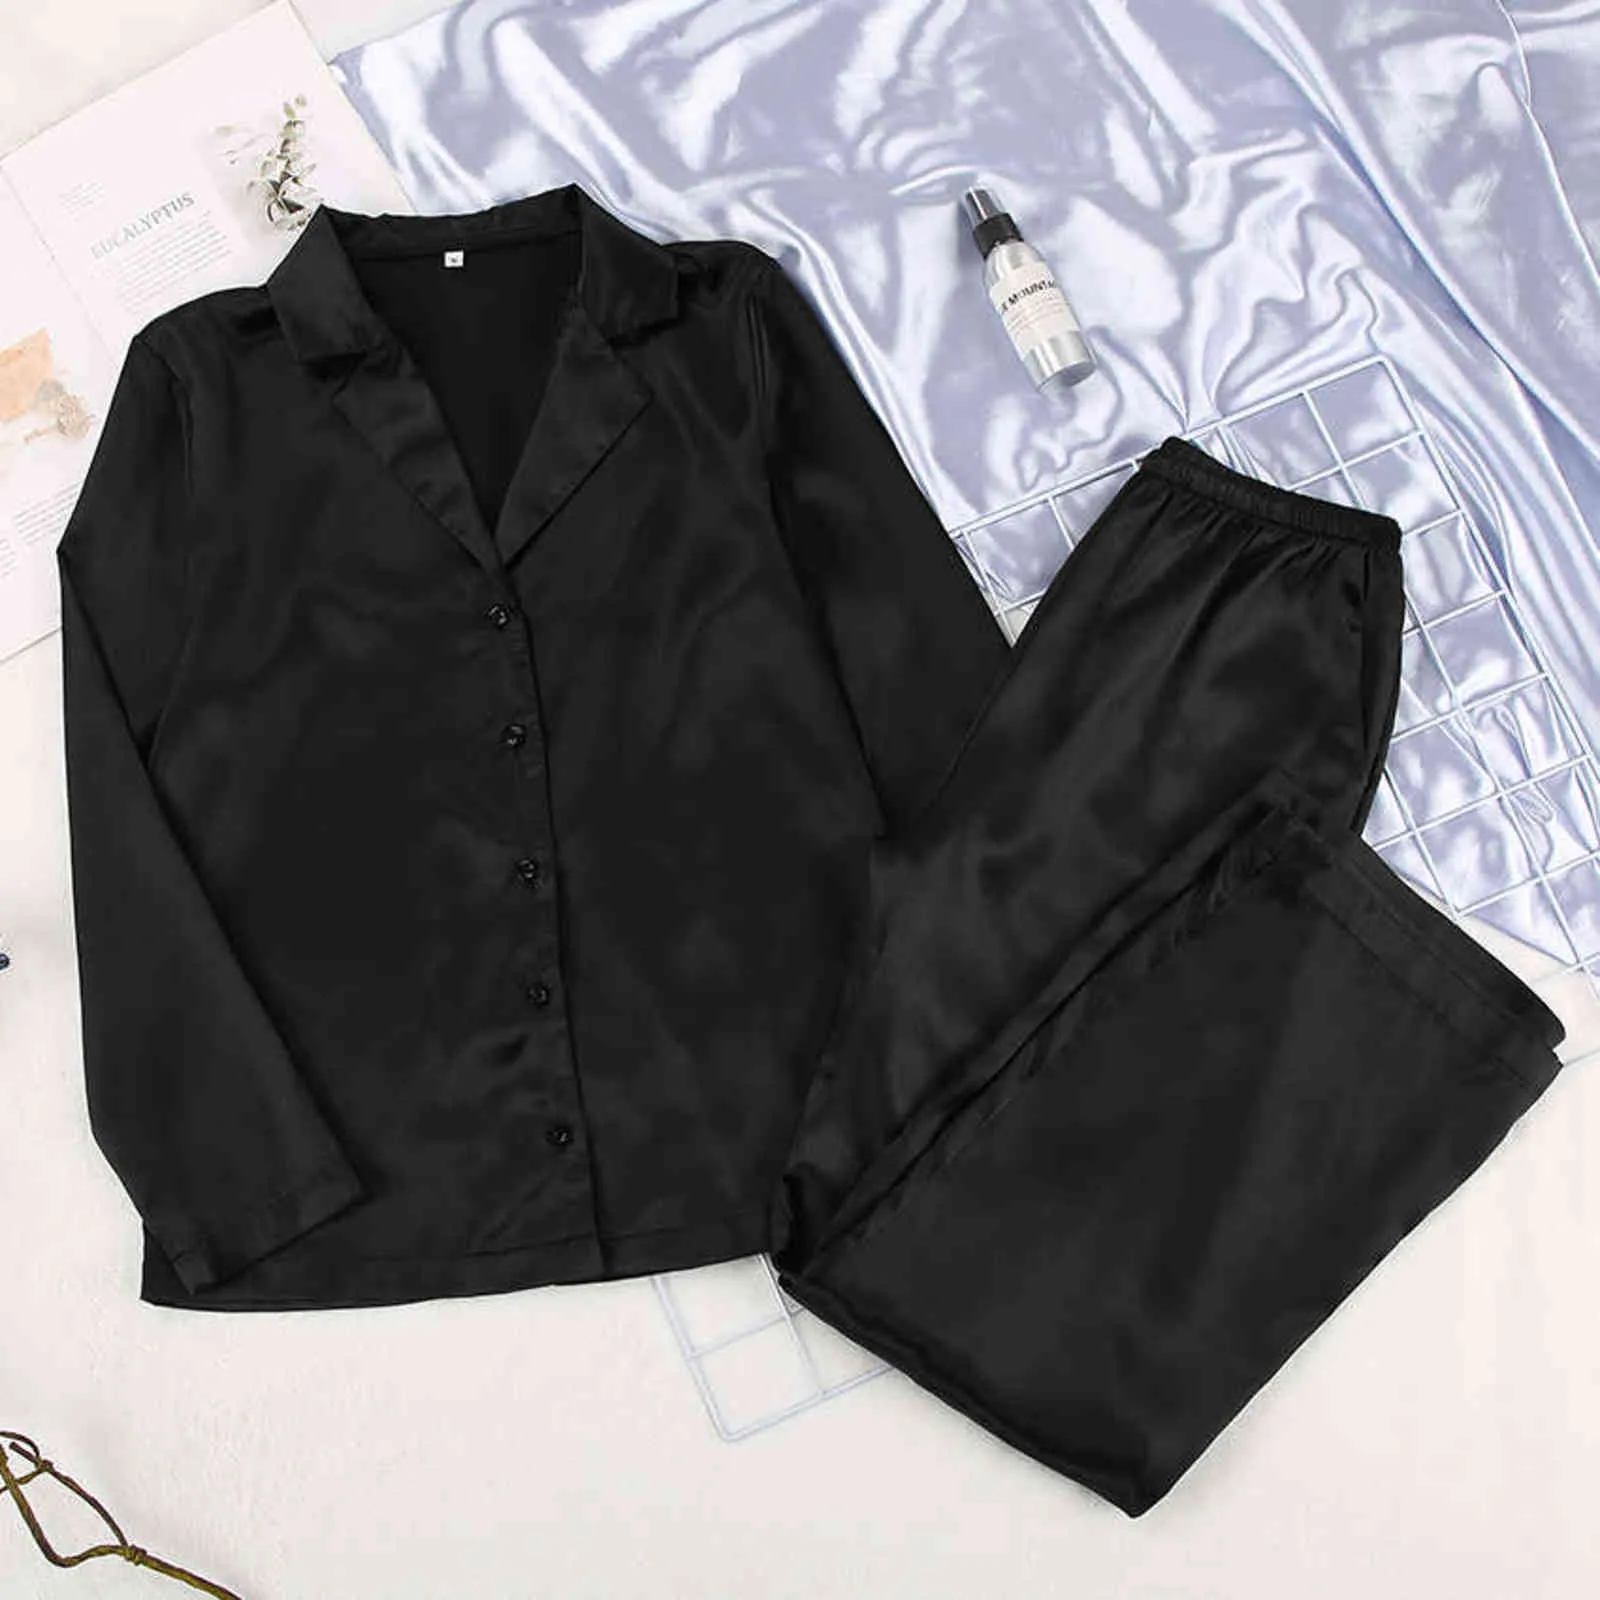 Hean Black Sleepwear Kobieta Satin 2 Sztuka Zestaw Solid Kobiety Piżamy Luźne Spodnie Casual Home Garnitur Zestawy Nightwear Winter Pocket 211112